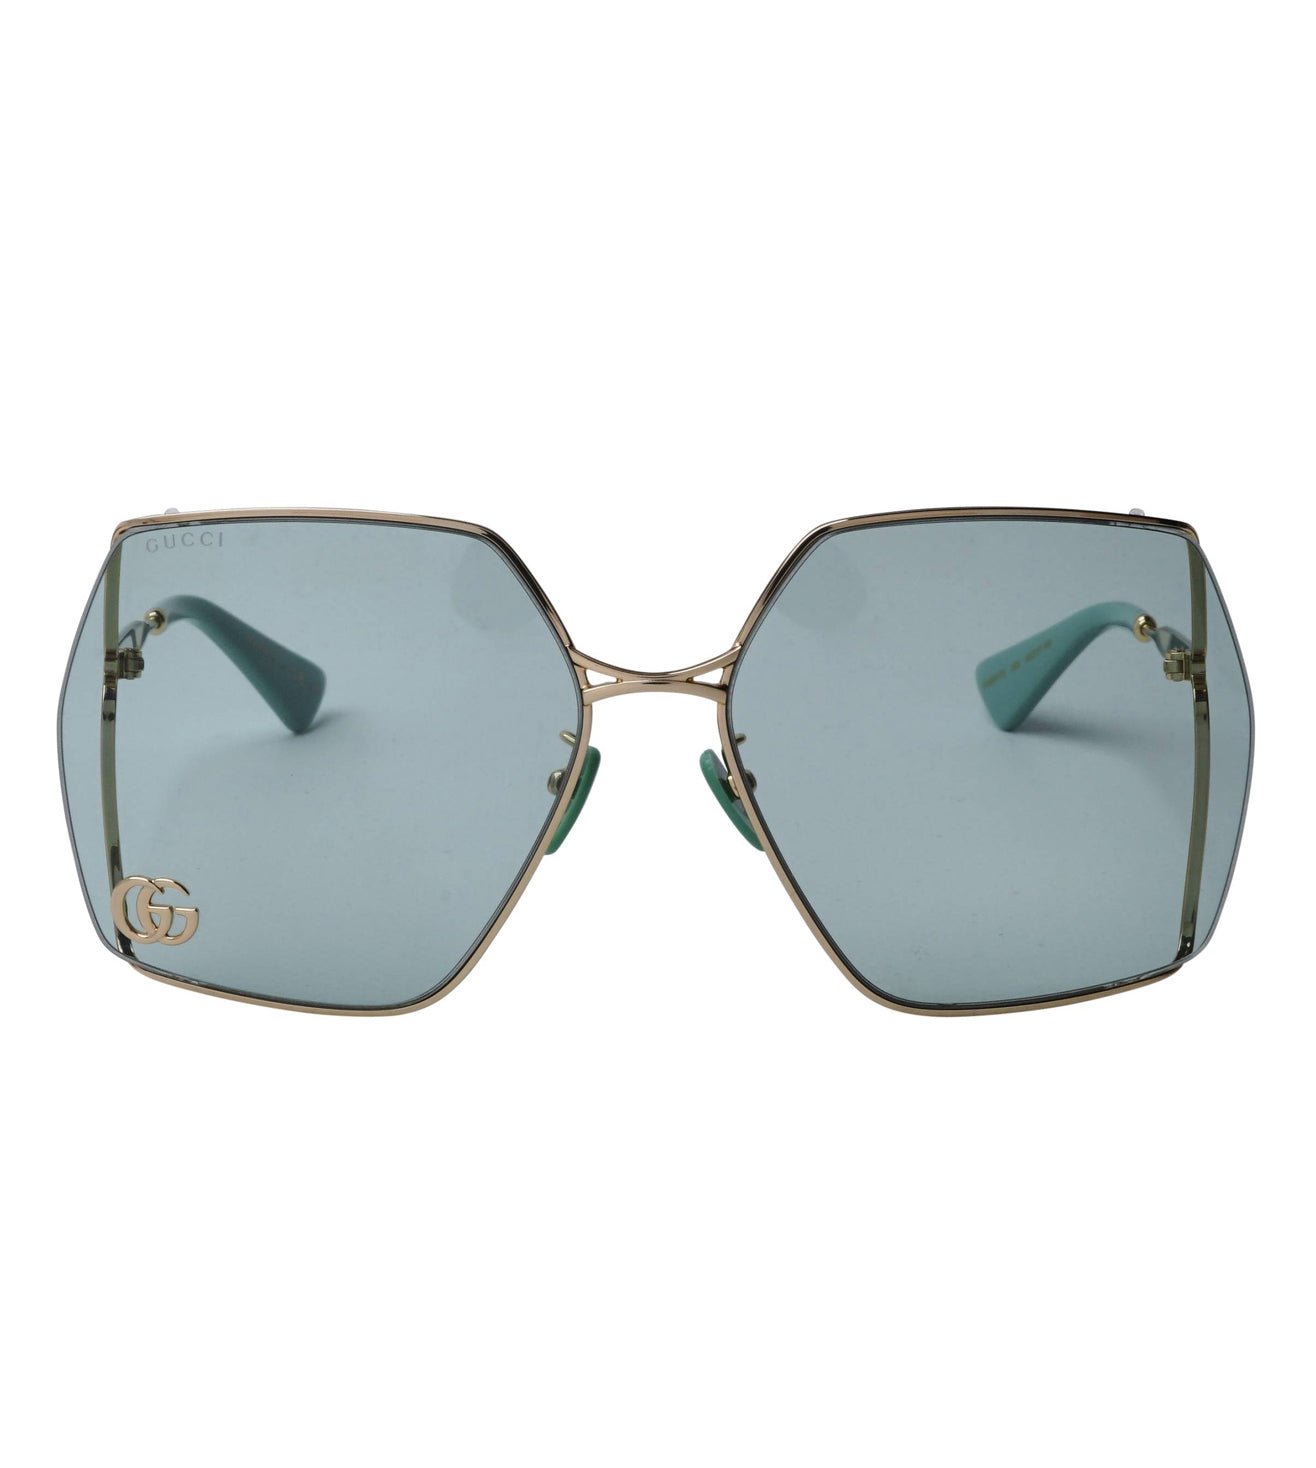 Gucci Women's Green Square Sunglasses